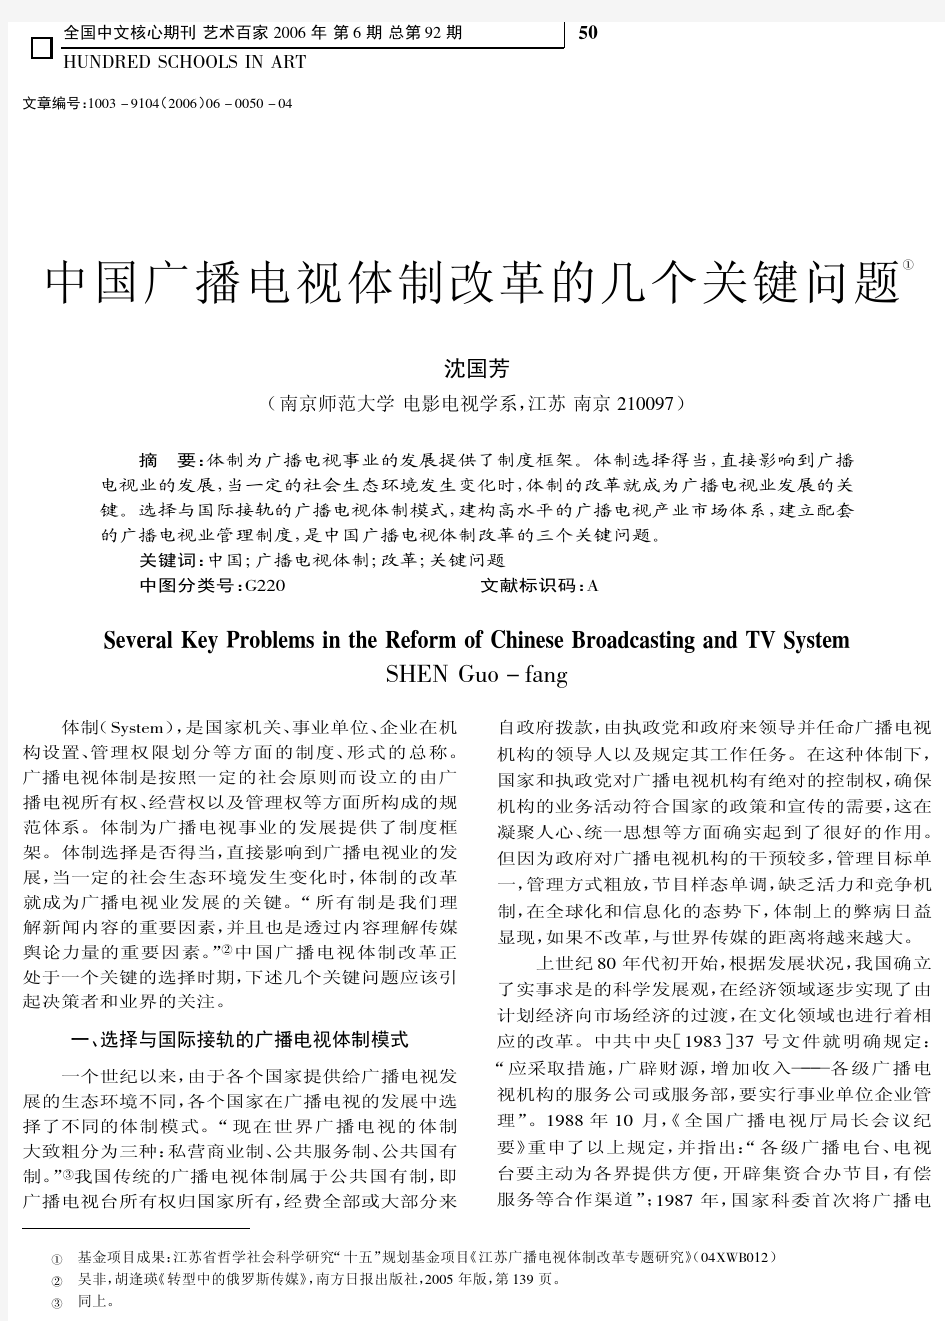 中国广播电视体制改革的几个关键问题